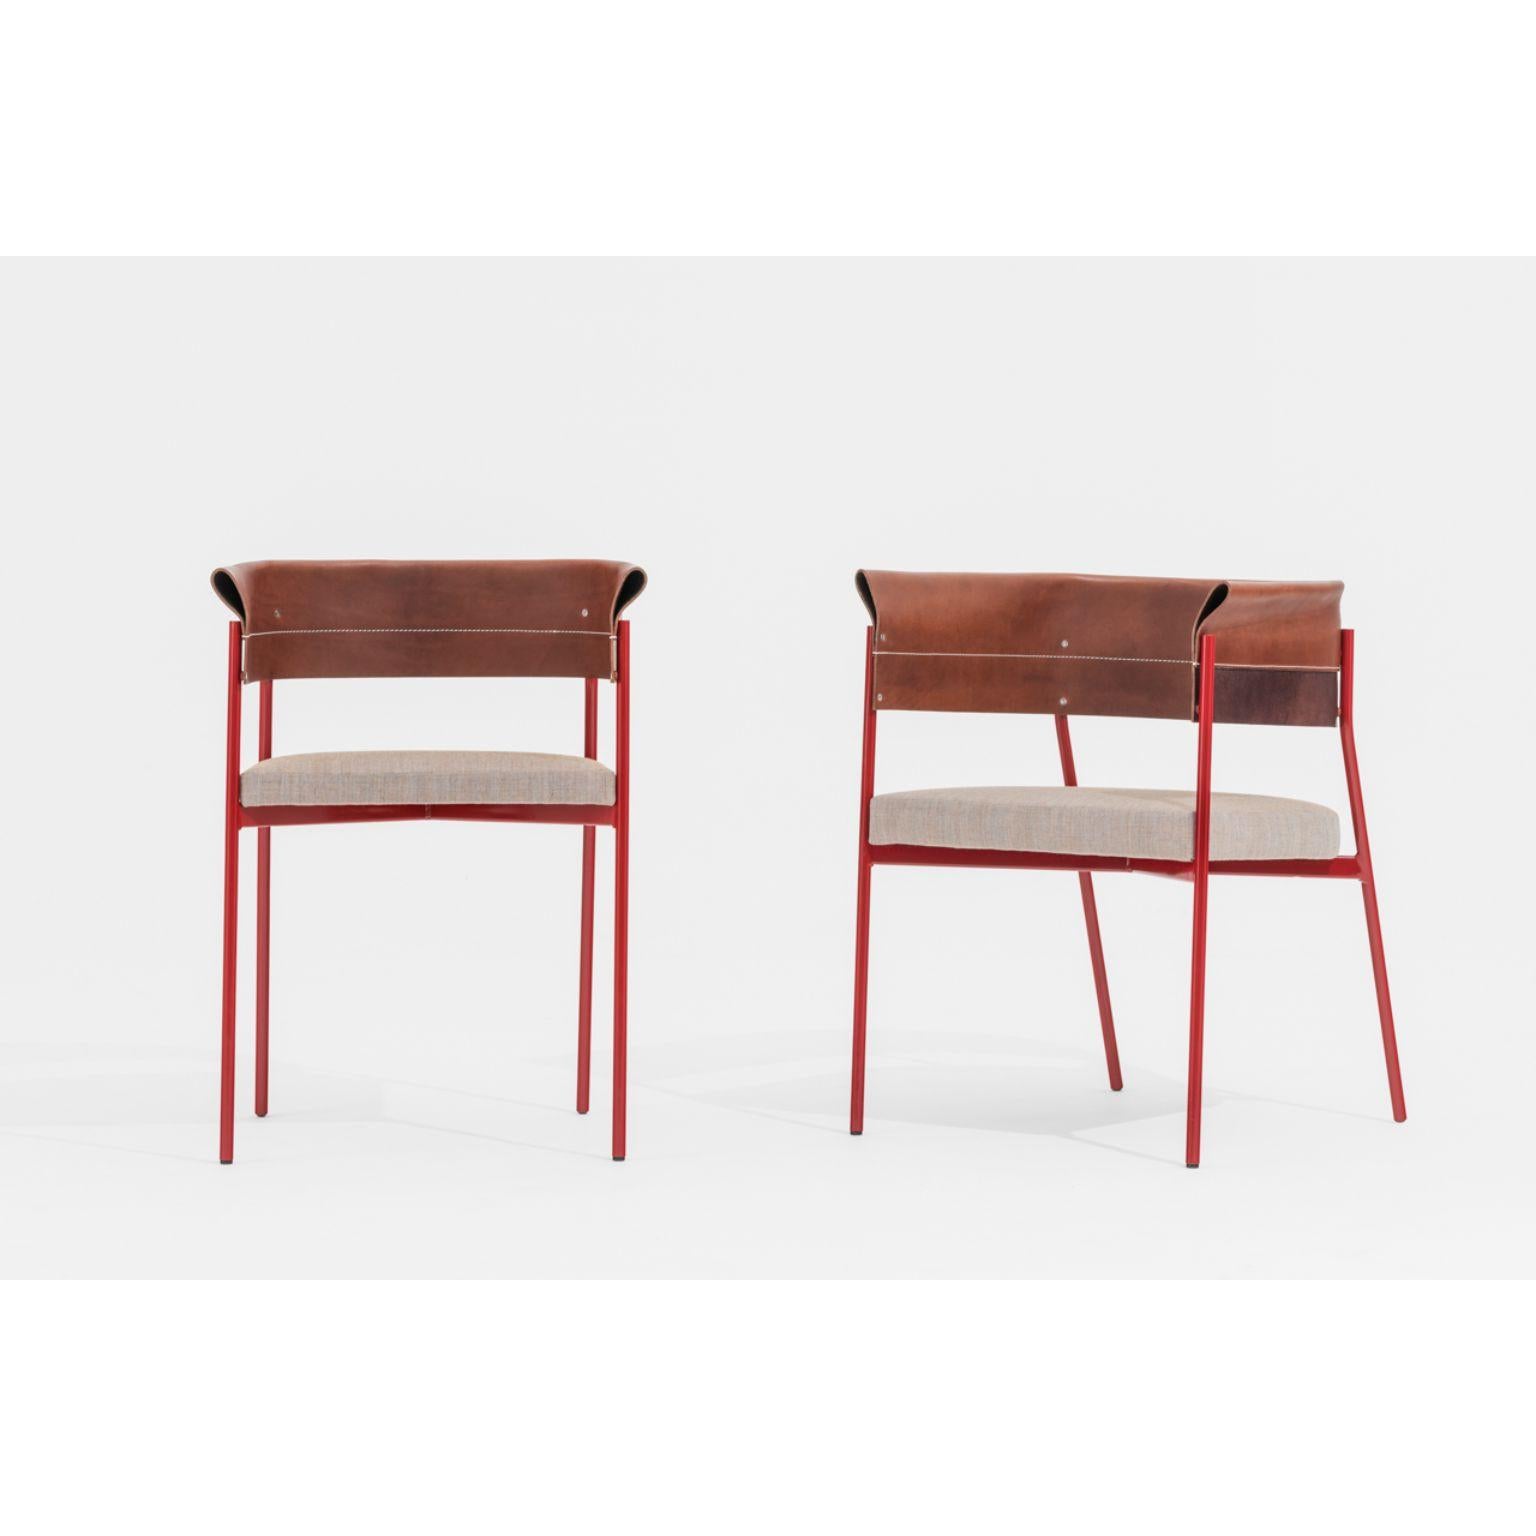 Ensemble de chaises Gomito par SEM
Dimensions : L 54 x P 45 x H 75 cm
MATERIAL : structure en acier laqué et moulé à la main en couleurs, dossier en cuir précieux plié et cousu, assise rembourrée en tissu Canvas 2 de Kvadrat.
Disponible également en